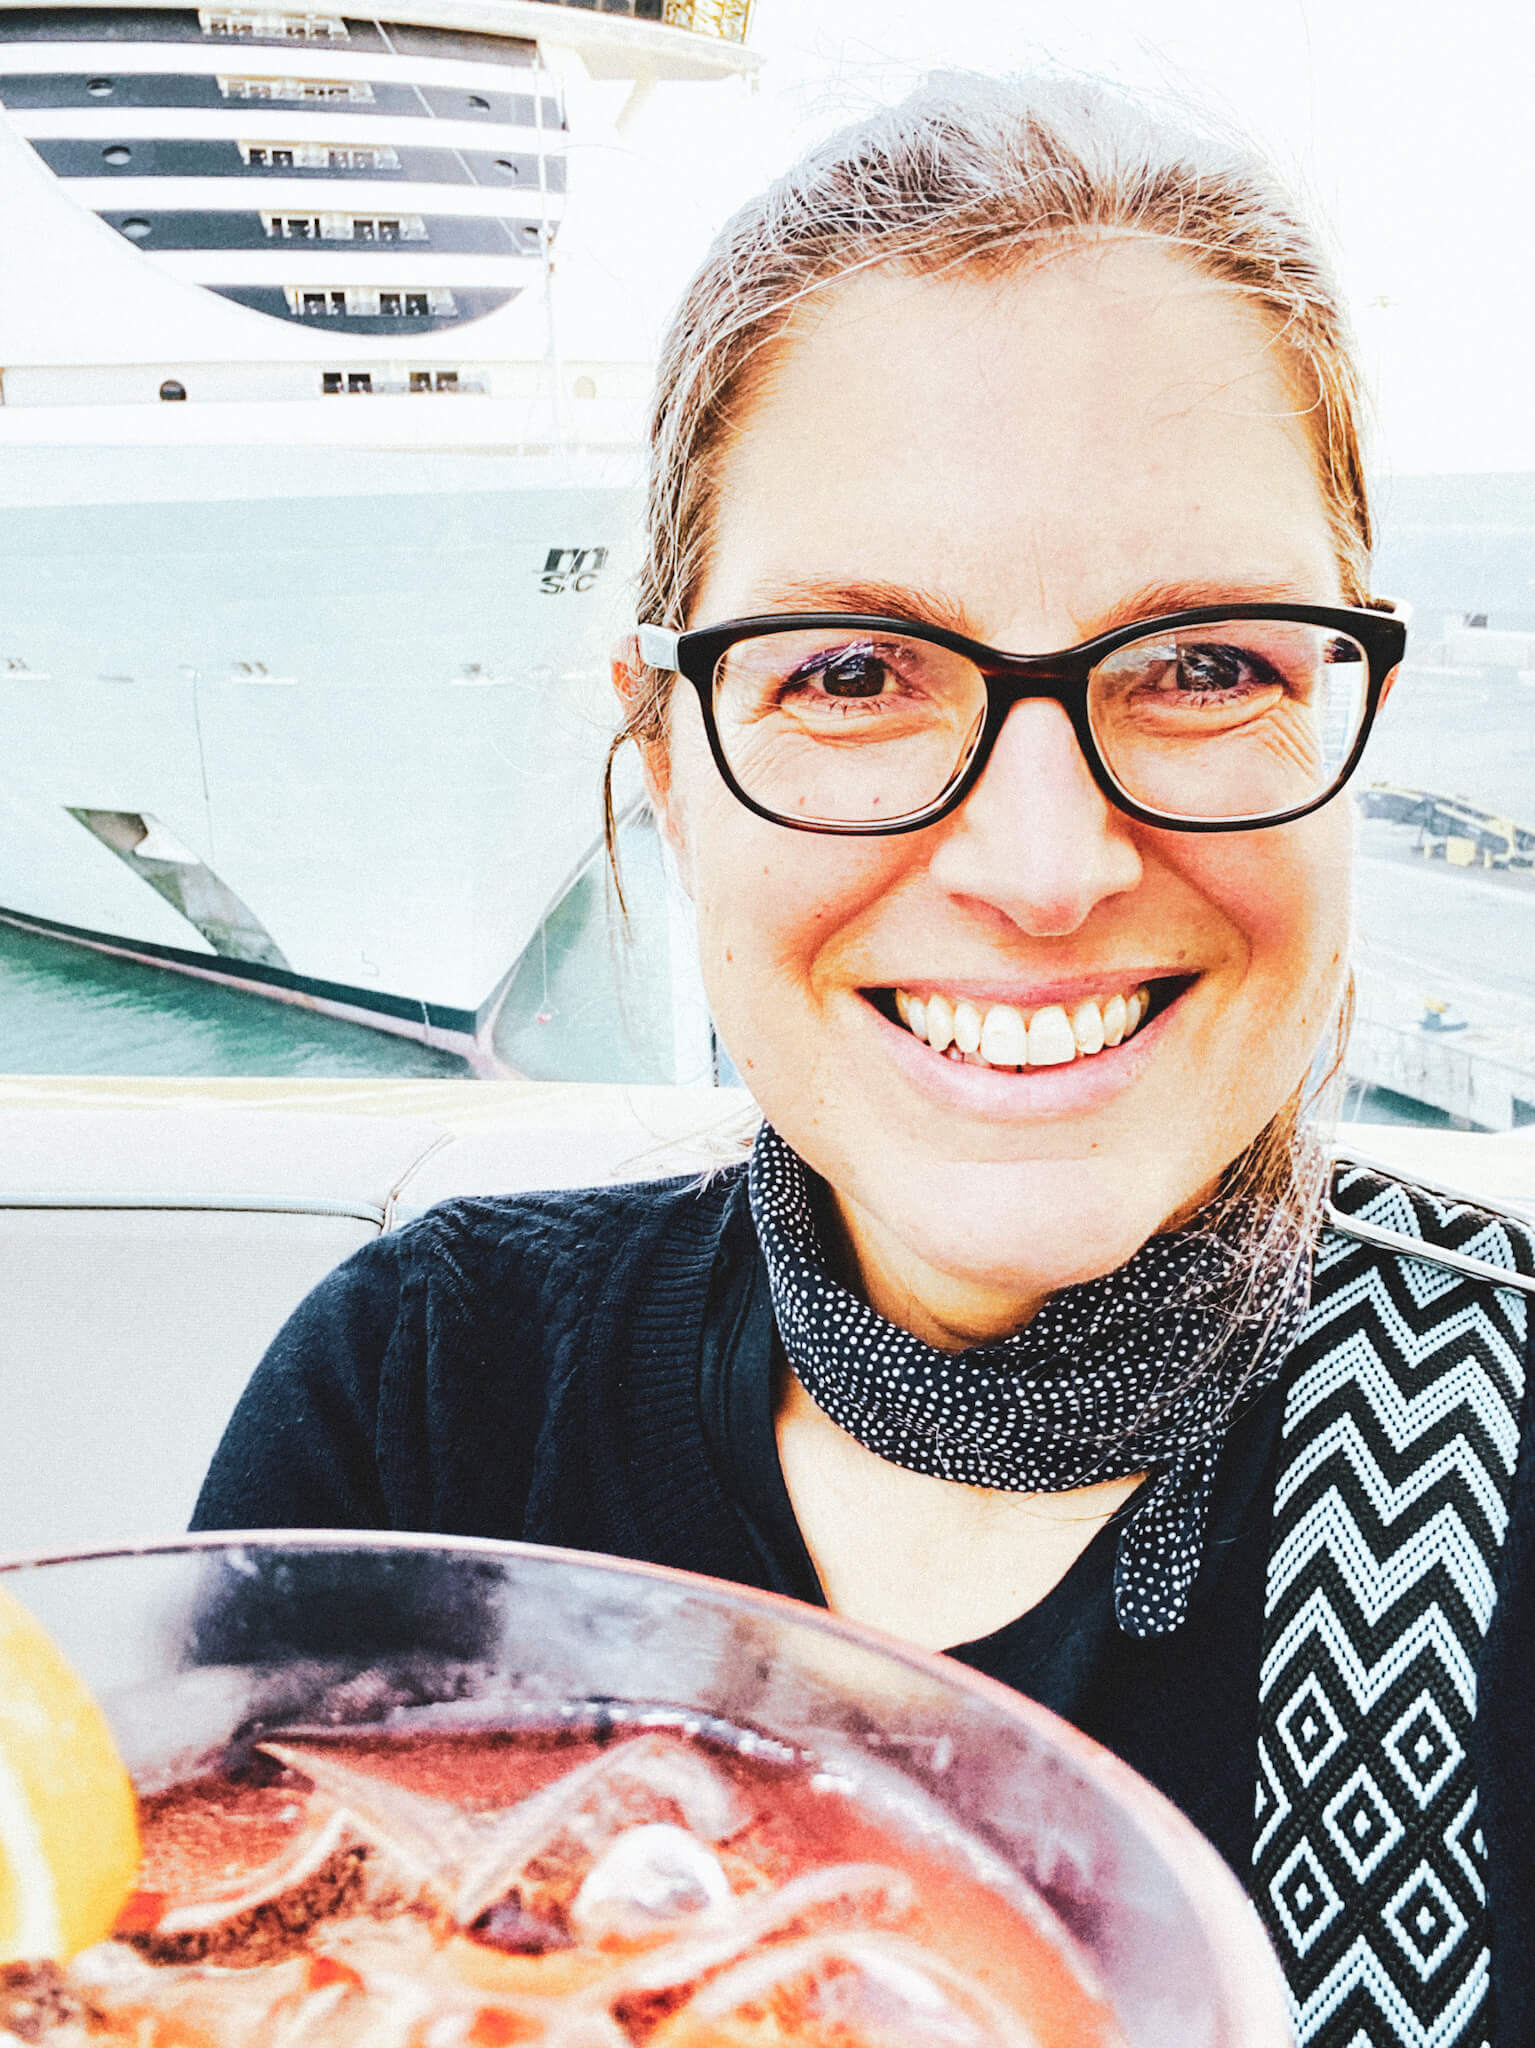 Kreuzfahrtschiff Costa Smeralda: Kirsten Rick, Freundin von Welt, mit einem Cocktail an Deck